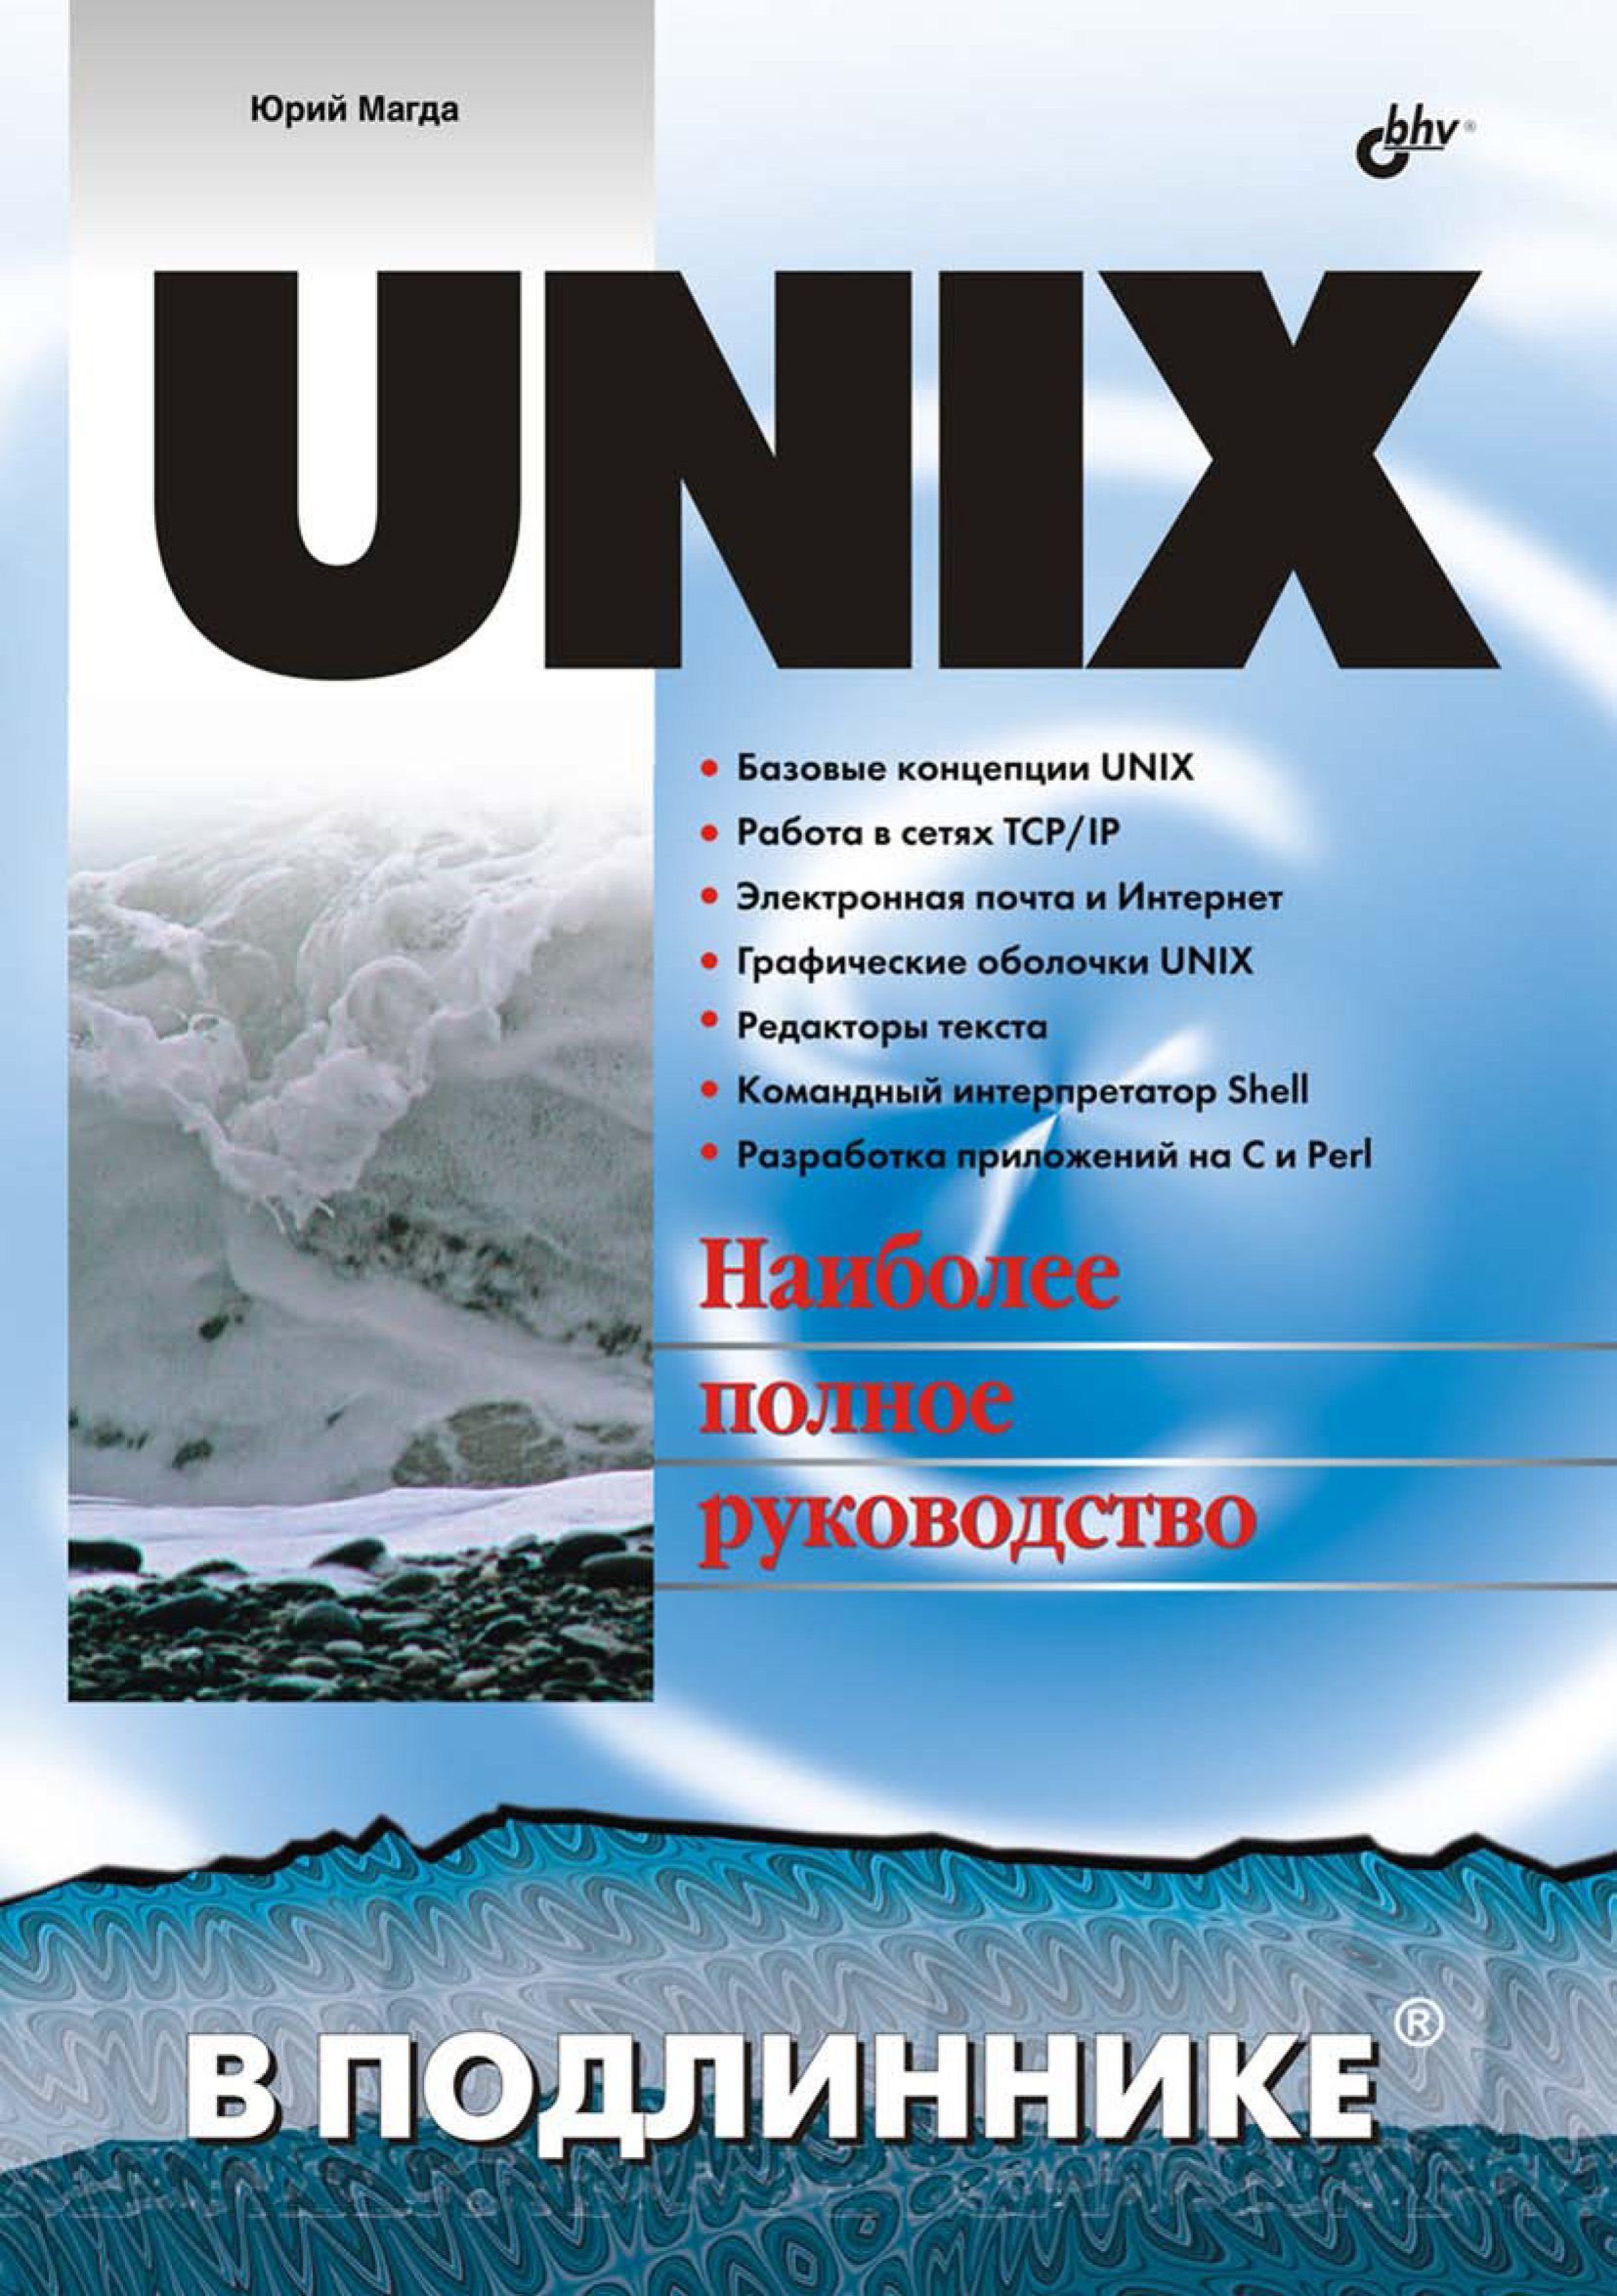 Книга В подлиннике. Наиболее полное руководство UNIX созданная Юрий Магда может относится к жанру ОС и сети, программирование, руководства. Стоимость электронной книги UNIX с идентификатором 6654124 составляет 191.00 руб.